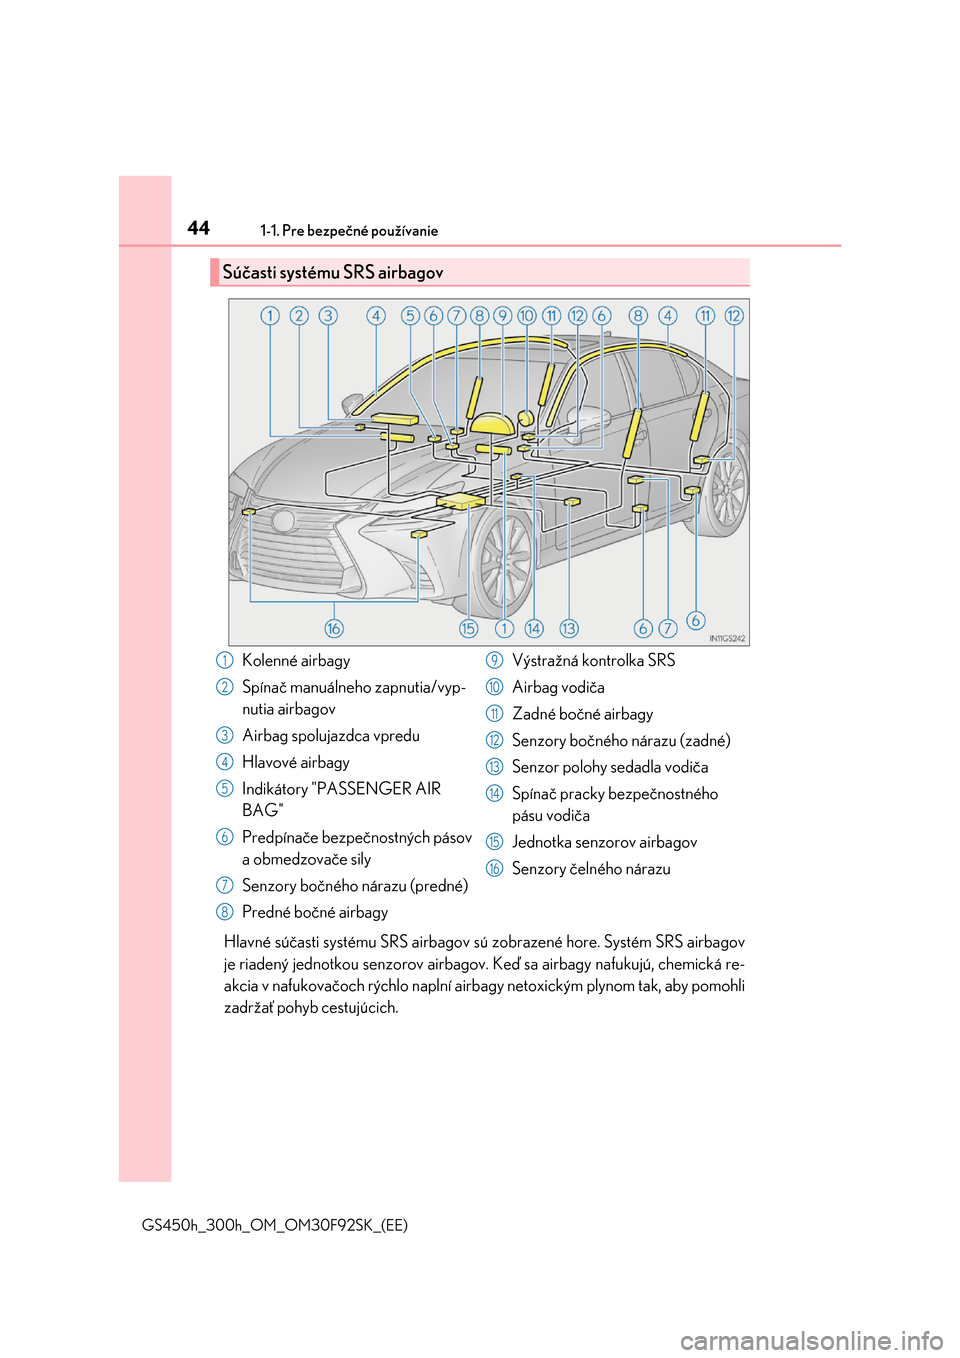 Lexus GS450h 2017  Užívateľská príručka (in Slovak) 441-1. Pre bezpečné používanie
GS450h_300h_OM_OM30F92SK_(EE)
Hlavné súčasti systému SRS airbagov sú zobrazené hore. Systém SRS airbagov 
je riadený jednotkou senzorov airbagov.  Keď sa ai